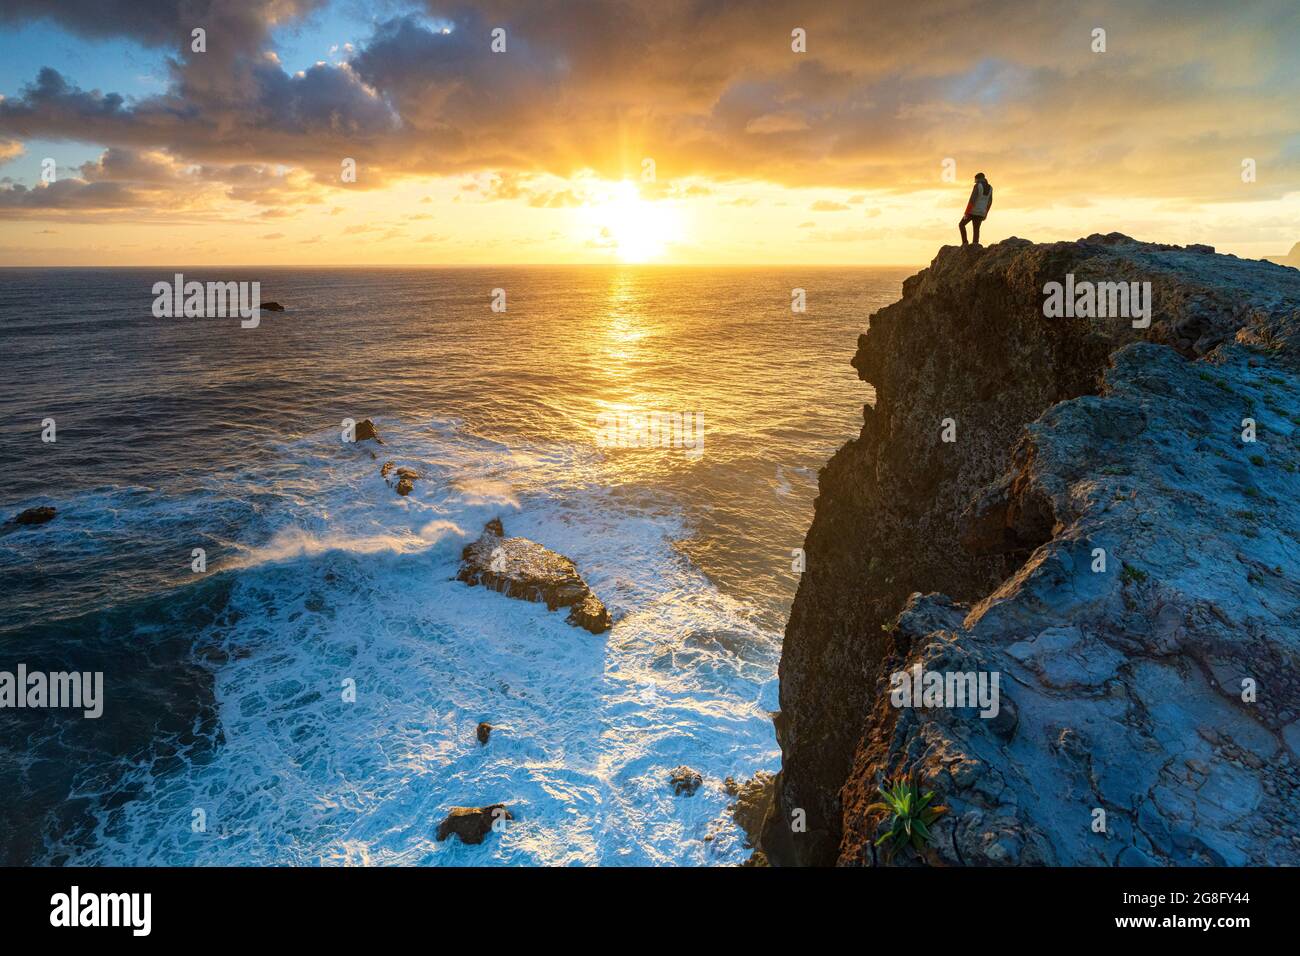 Un homme regardant le lever du soleil sur les vagues de l'océan depuis les falaises, l'île de Madère, le Portugal, l'Atlantique, l'Europe Banque D'Images